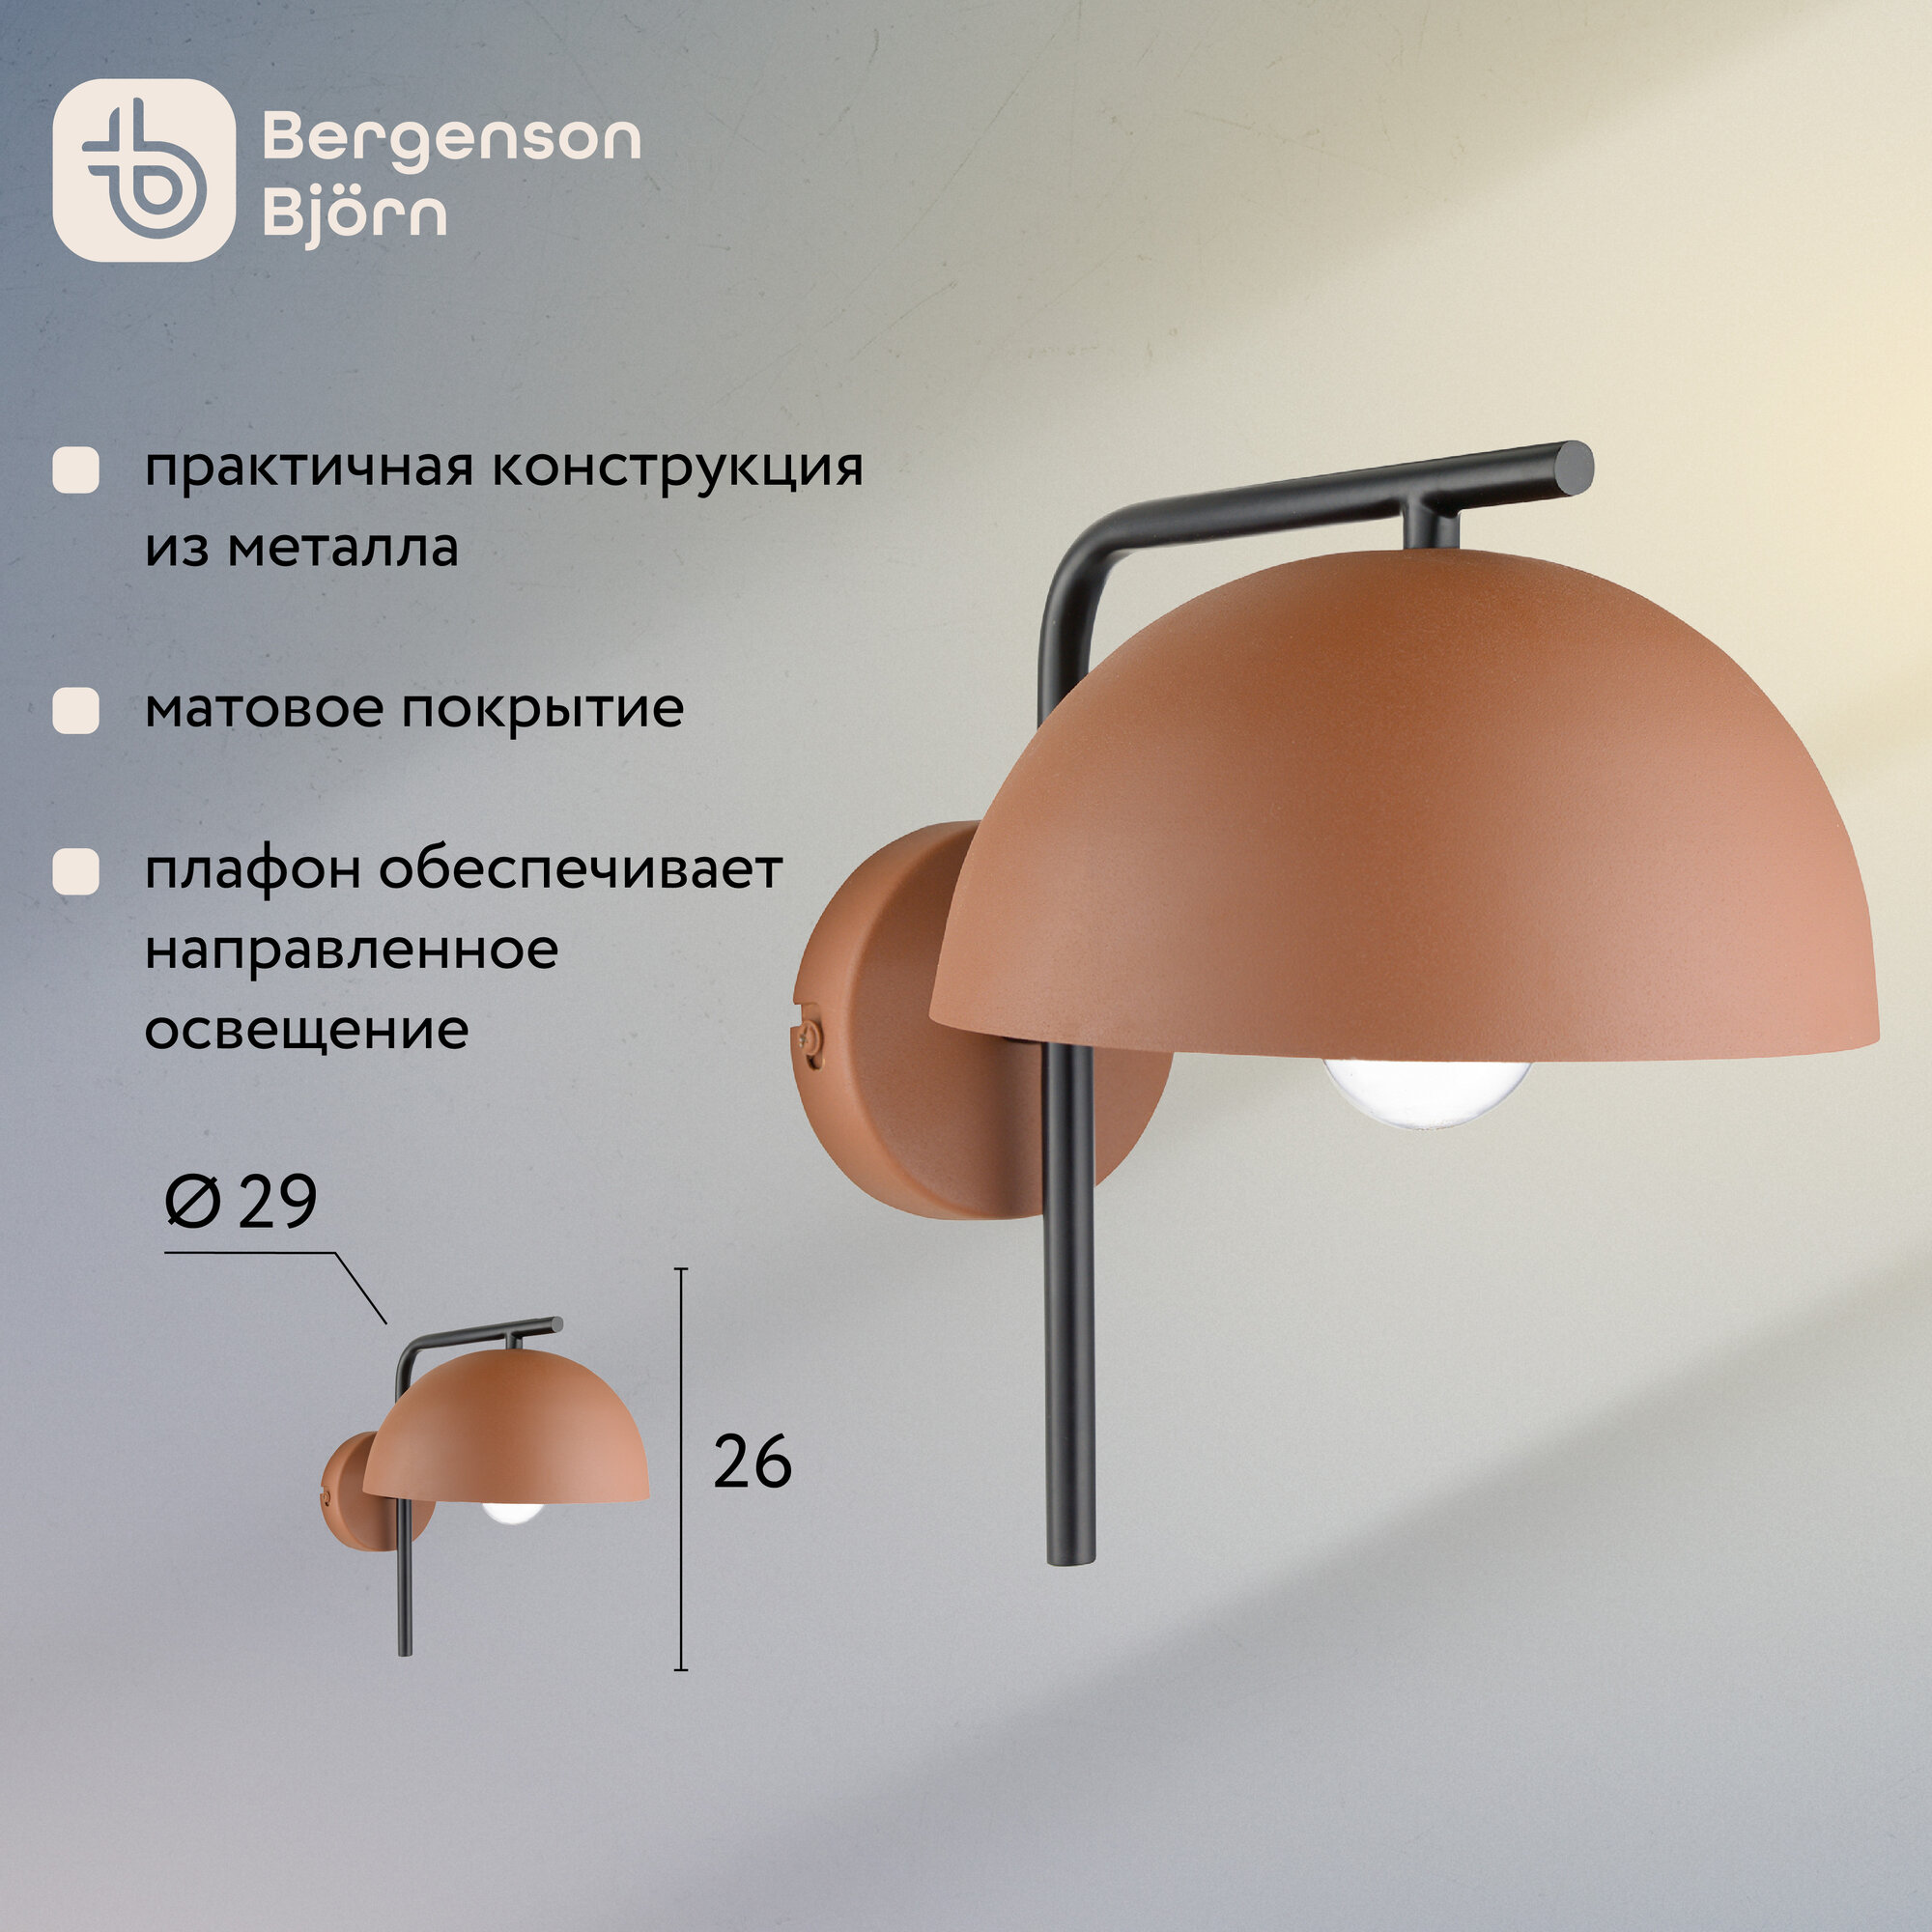 Светильник настенный Jassy 29х26 см бра лампа для офиса и дома коричневый Bergenson Bjorn BB0000446